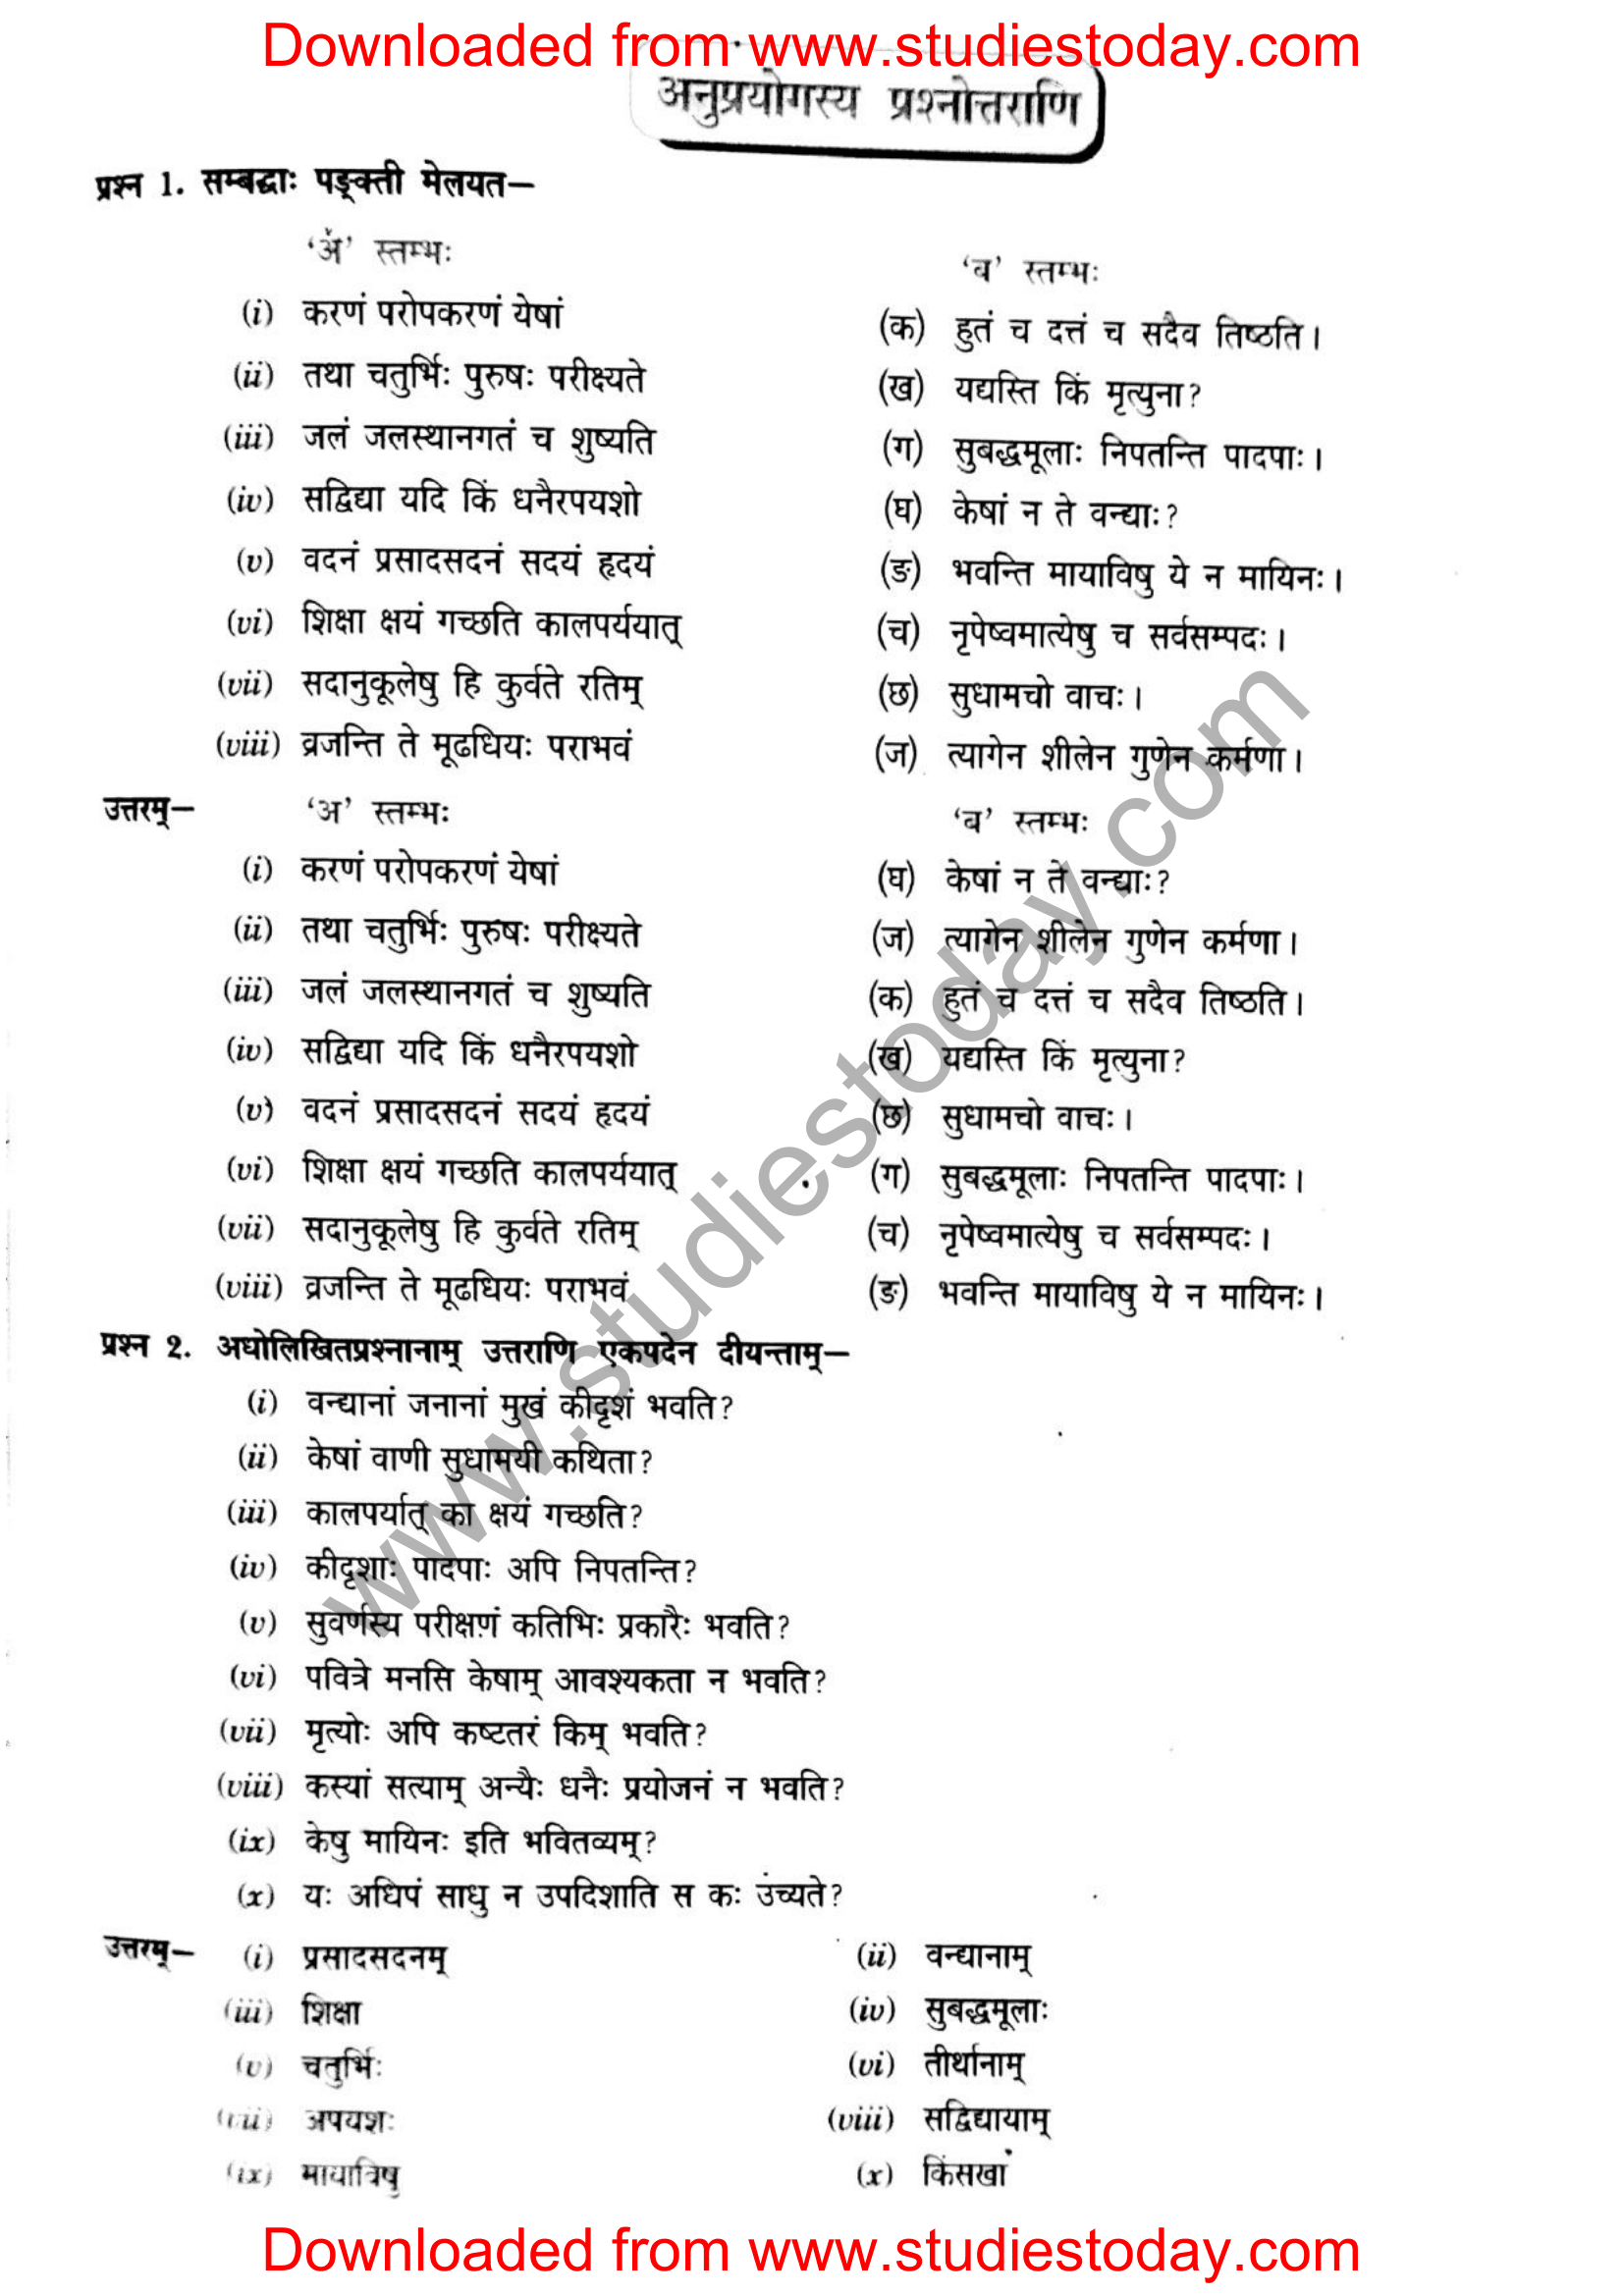 ncert-solutions-class-12-sanskrit-ritikia-chapter-6-06